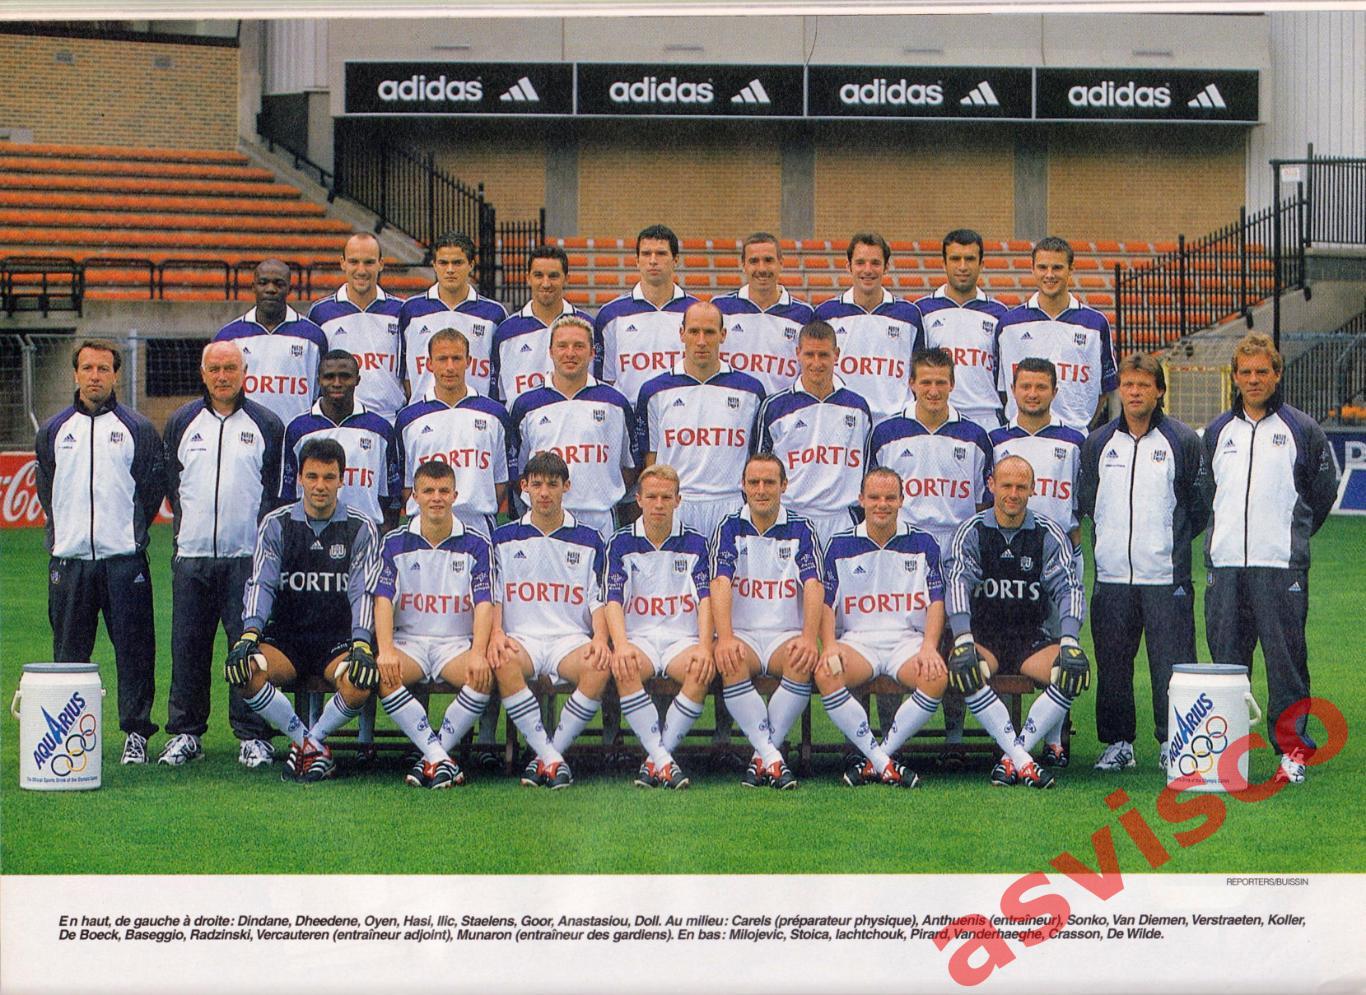 Чемпионат Бельгии по футболу. Сезон 2000-01 годов. Представление команд. 4